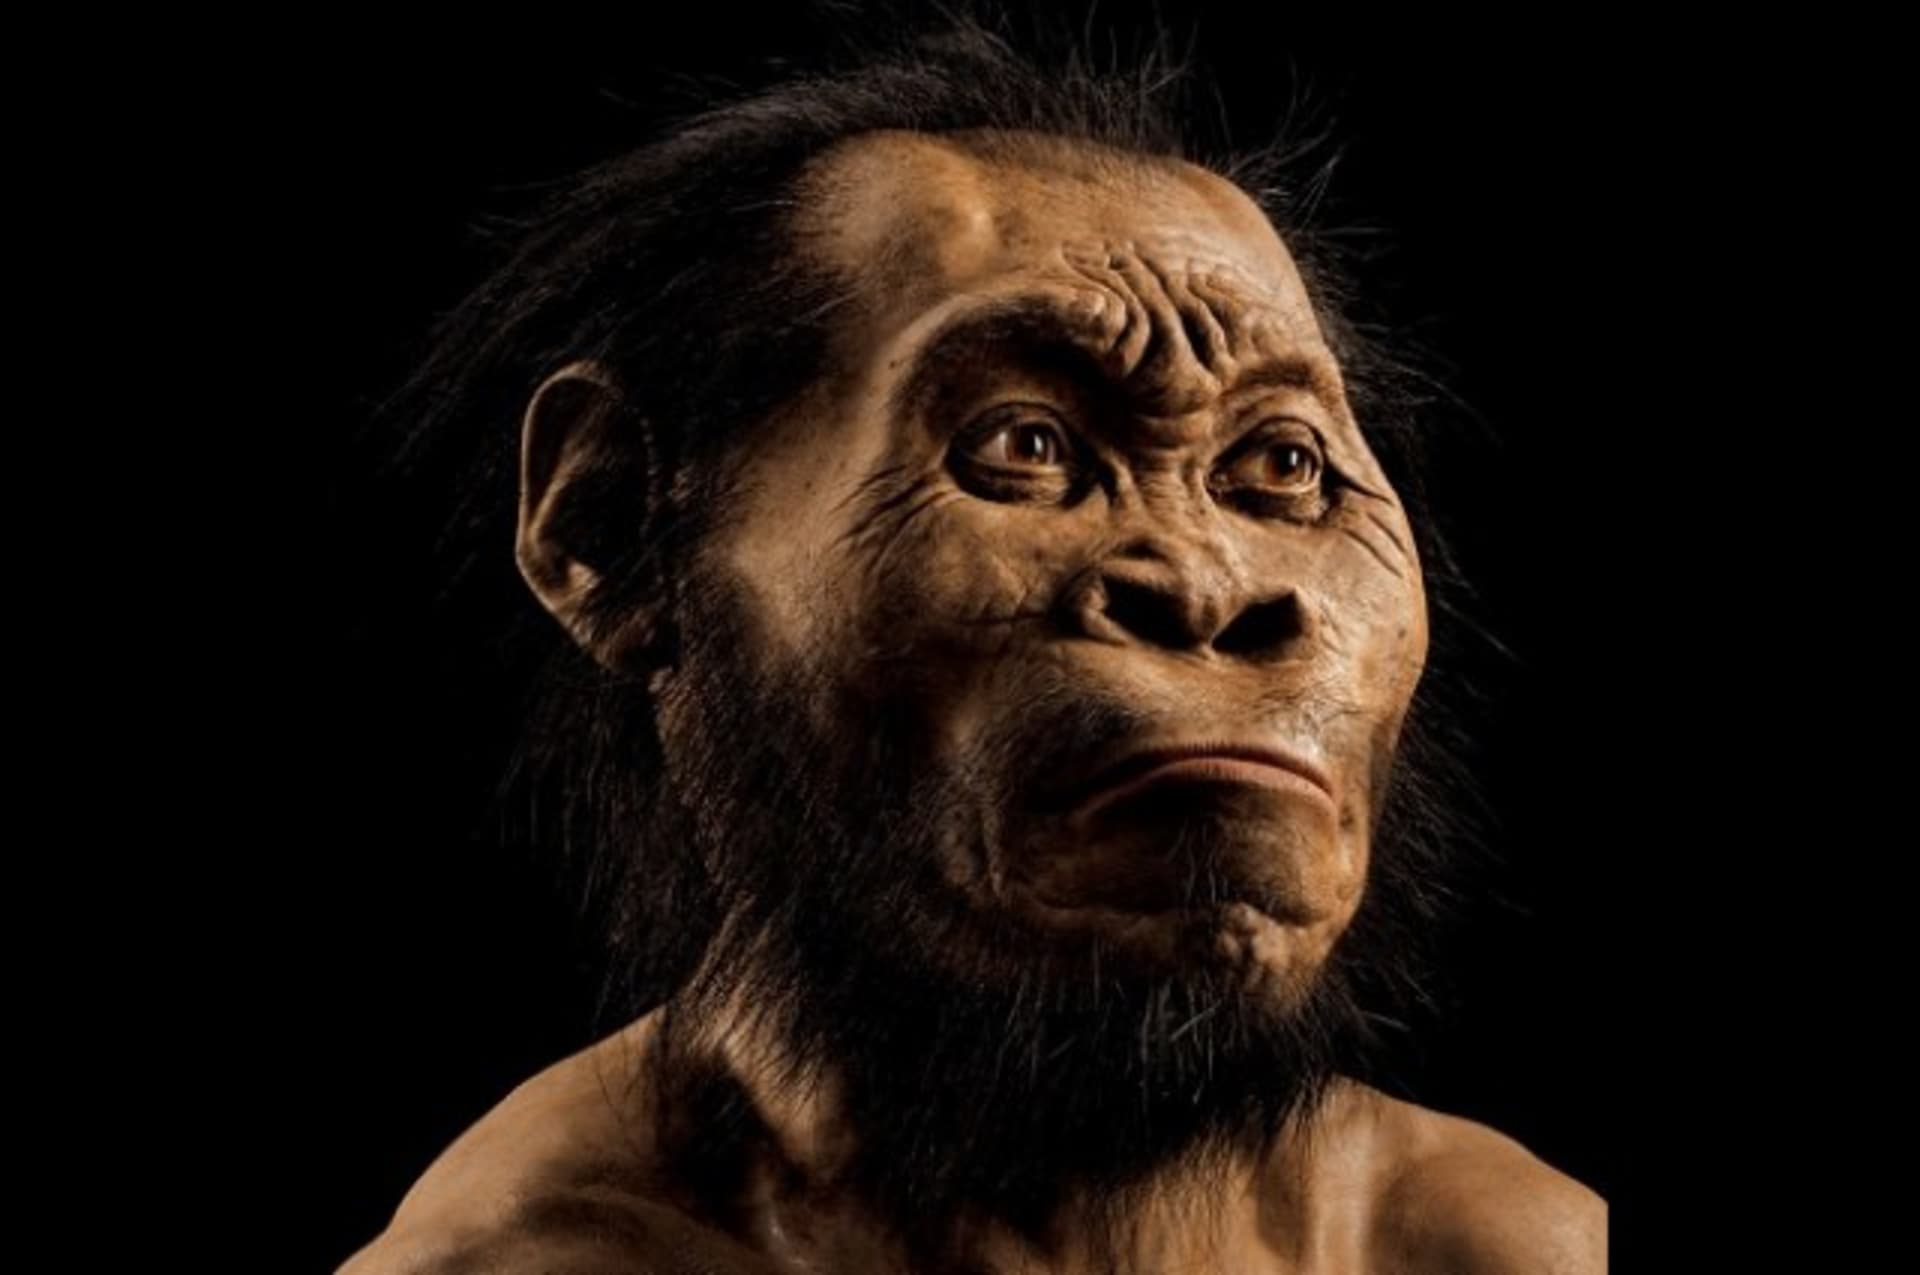 Vyobrazení Homo naledi, který pravděpodobně žil před 335 000 až 236 000 lety.